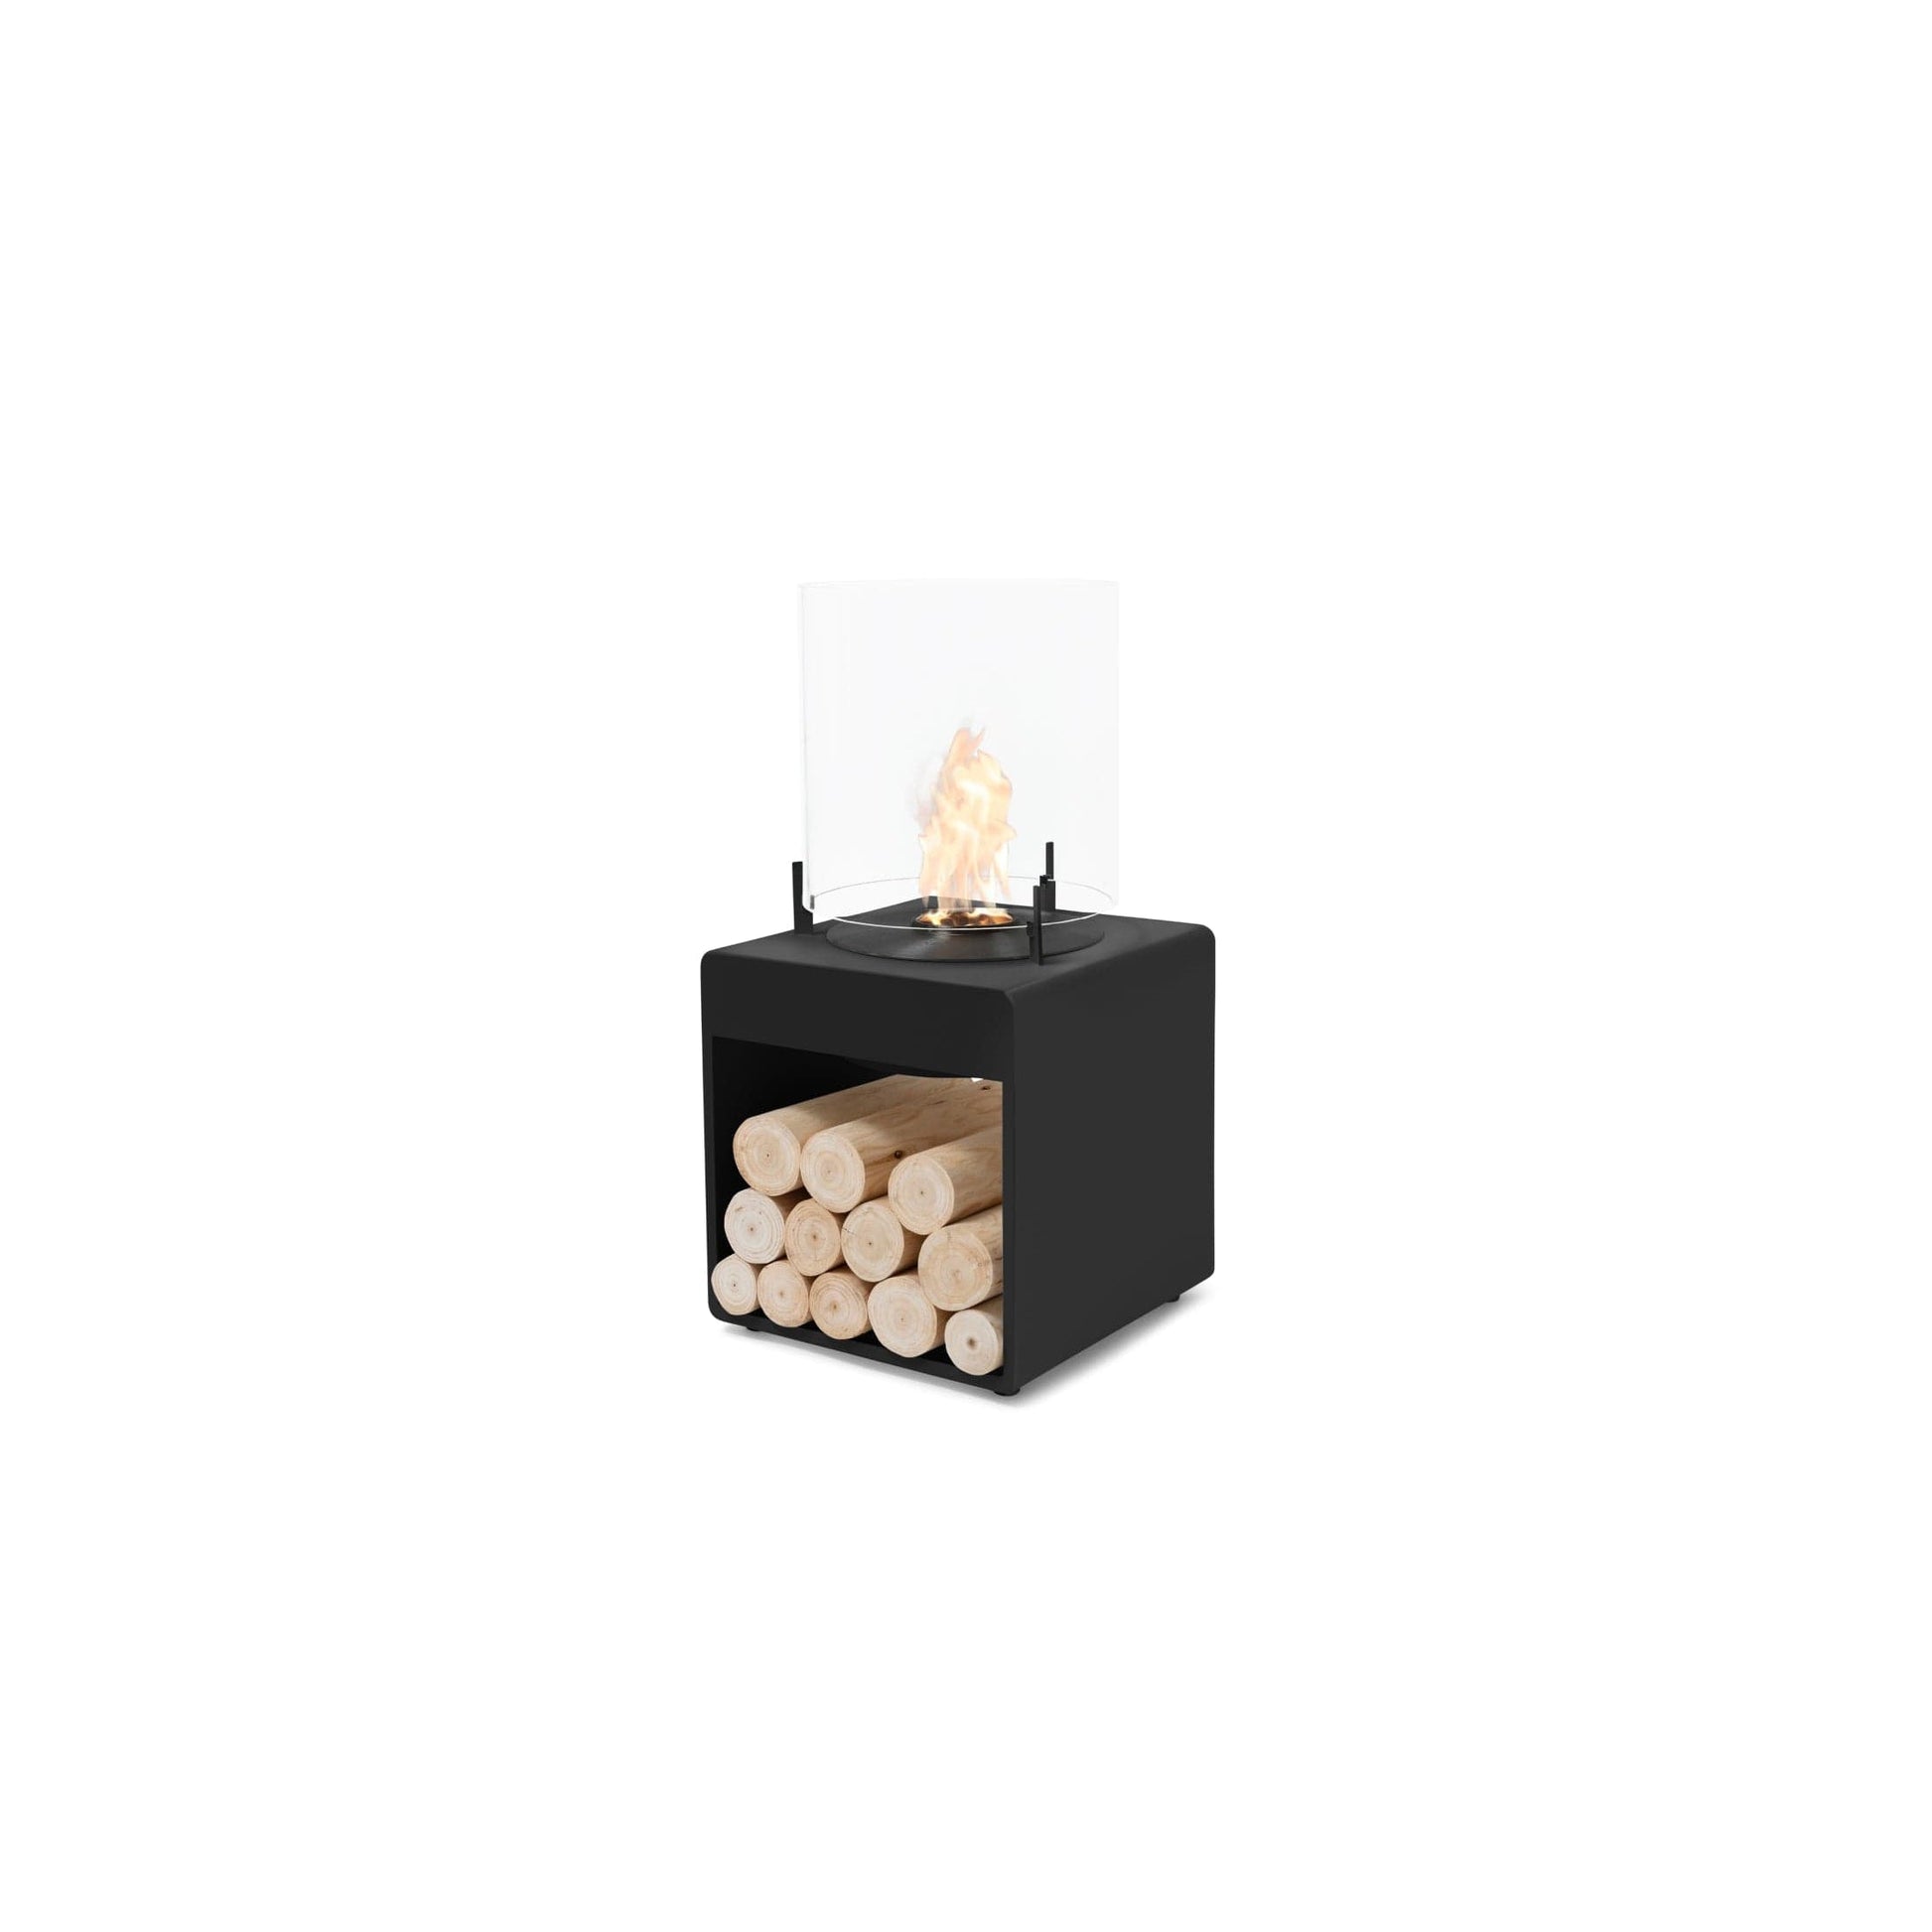 EcoSmart Fire POP 3L 27" Black Freestanding Designer Fireplace with Black Burner by MAD Design Group